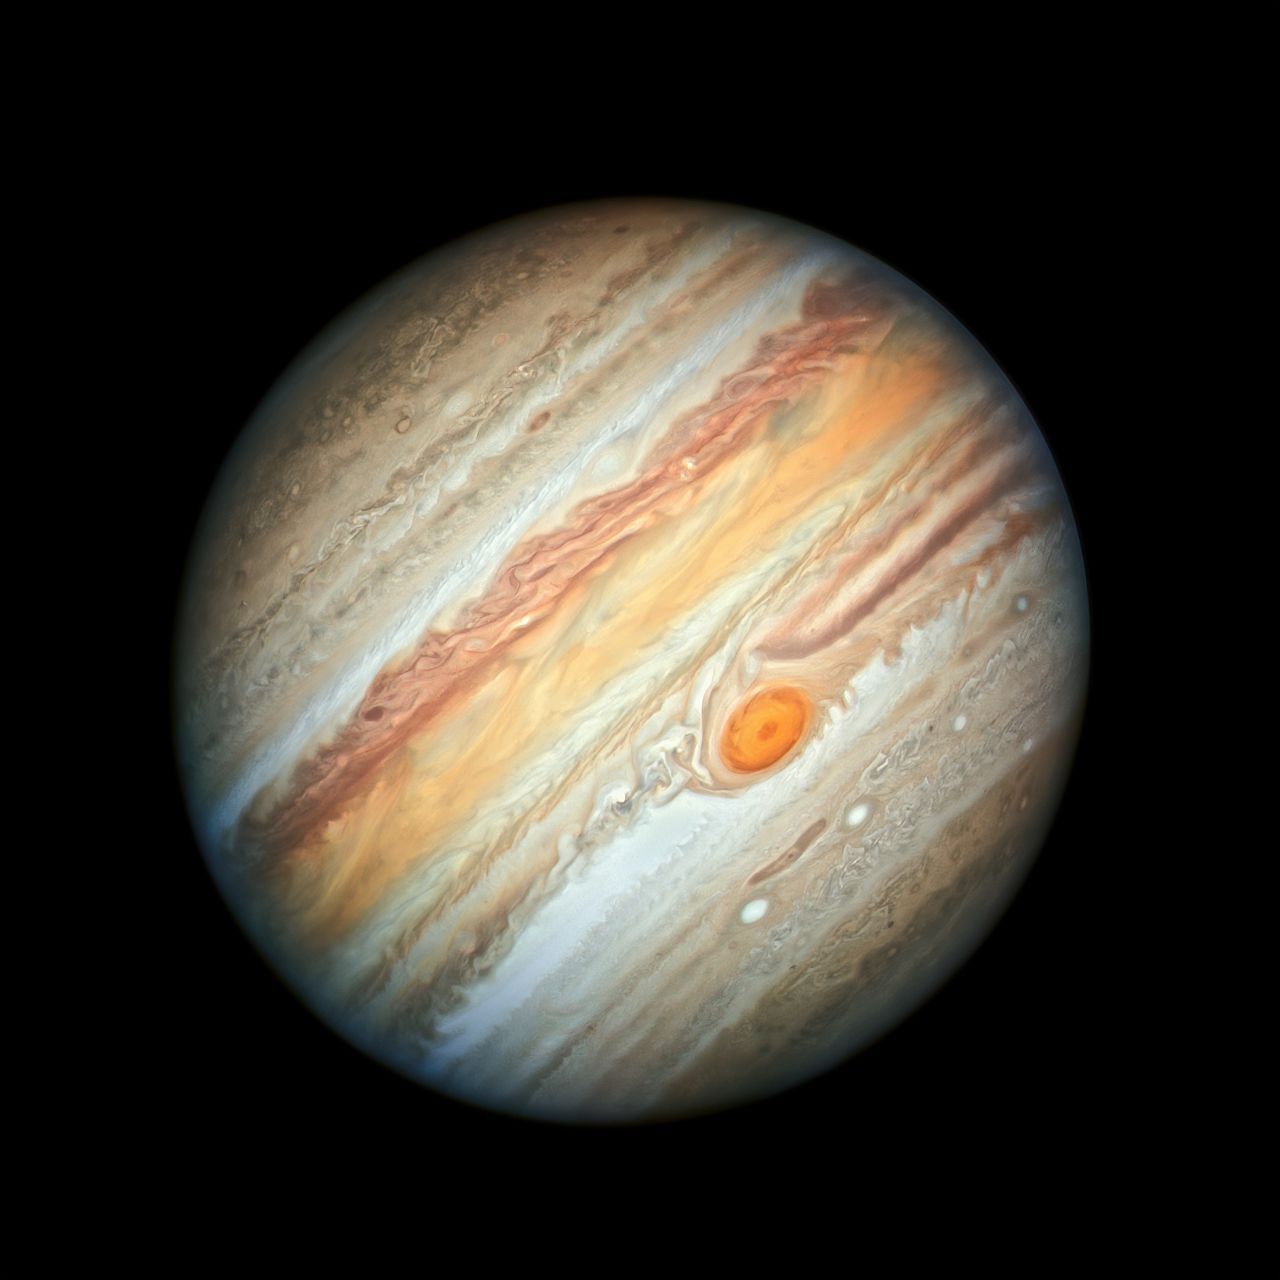 Als am 27. Juni 2020 der Jupiter nur 644 Millionen Kilometer entfernt war, nutzte das Hubble seine Chance. Zu sehen ist die detaillierteste Aufnahme, die wir bis dahin von Jupiter hatten. Der Planet ist vollkommen mit Wolken bedeckt. Der große Rote Punkt ist das Auge eines Sturms, der seit mindestens 360 Jahren auf dem Planeten wütet.